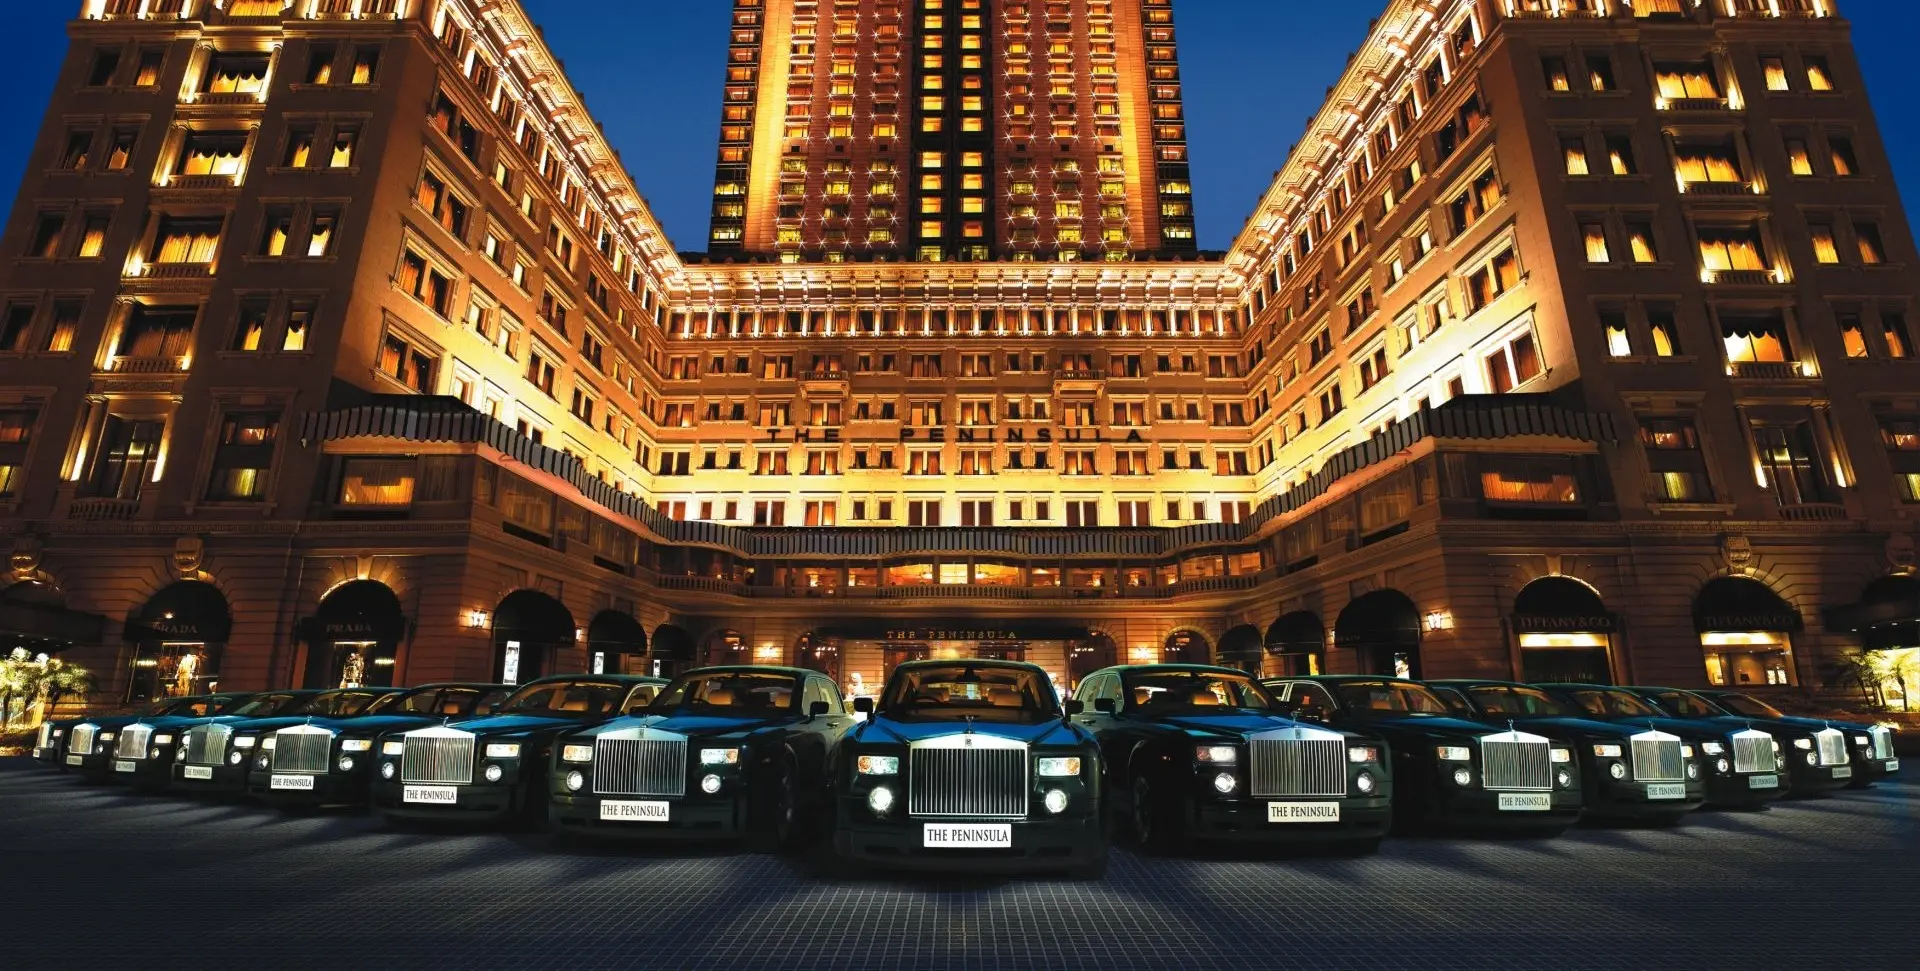 Hotel review Location' - The Peninsula Hong Kong - 1